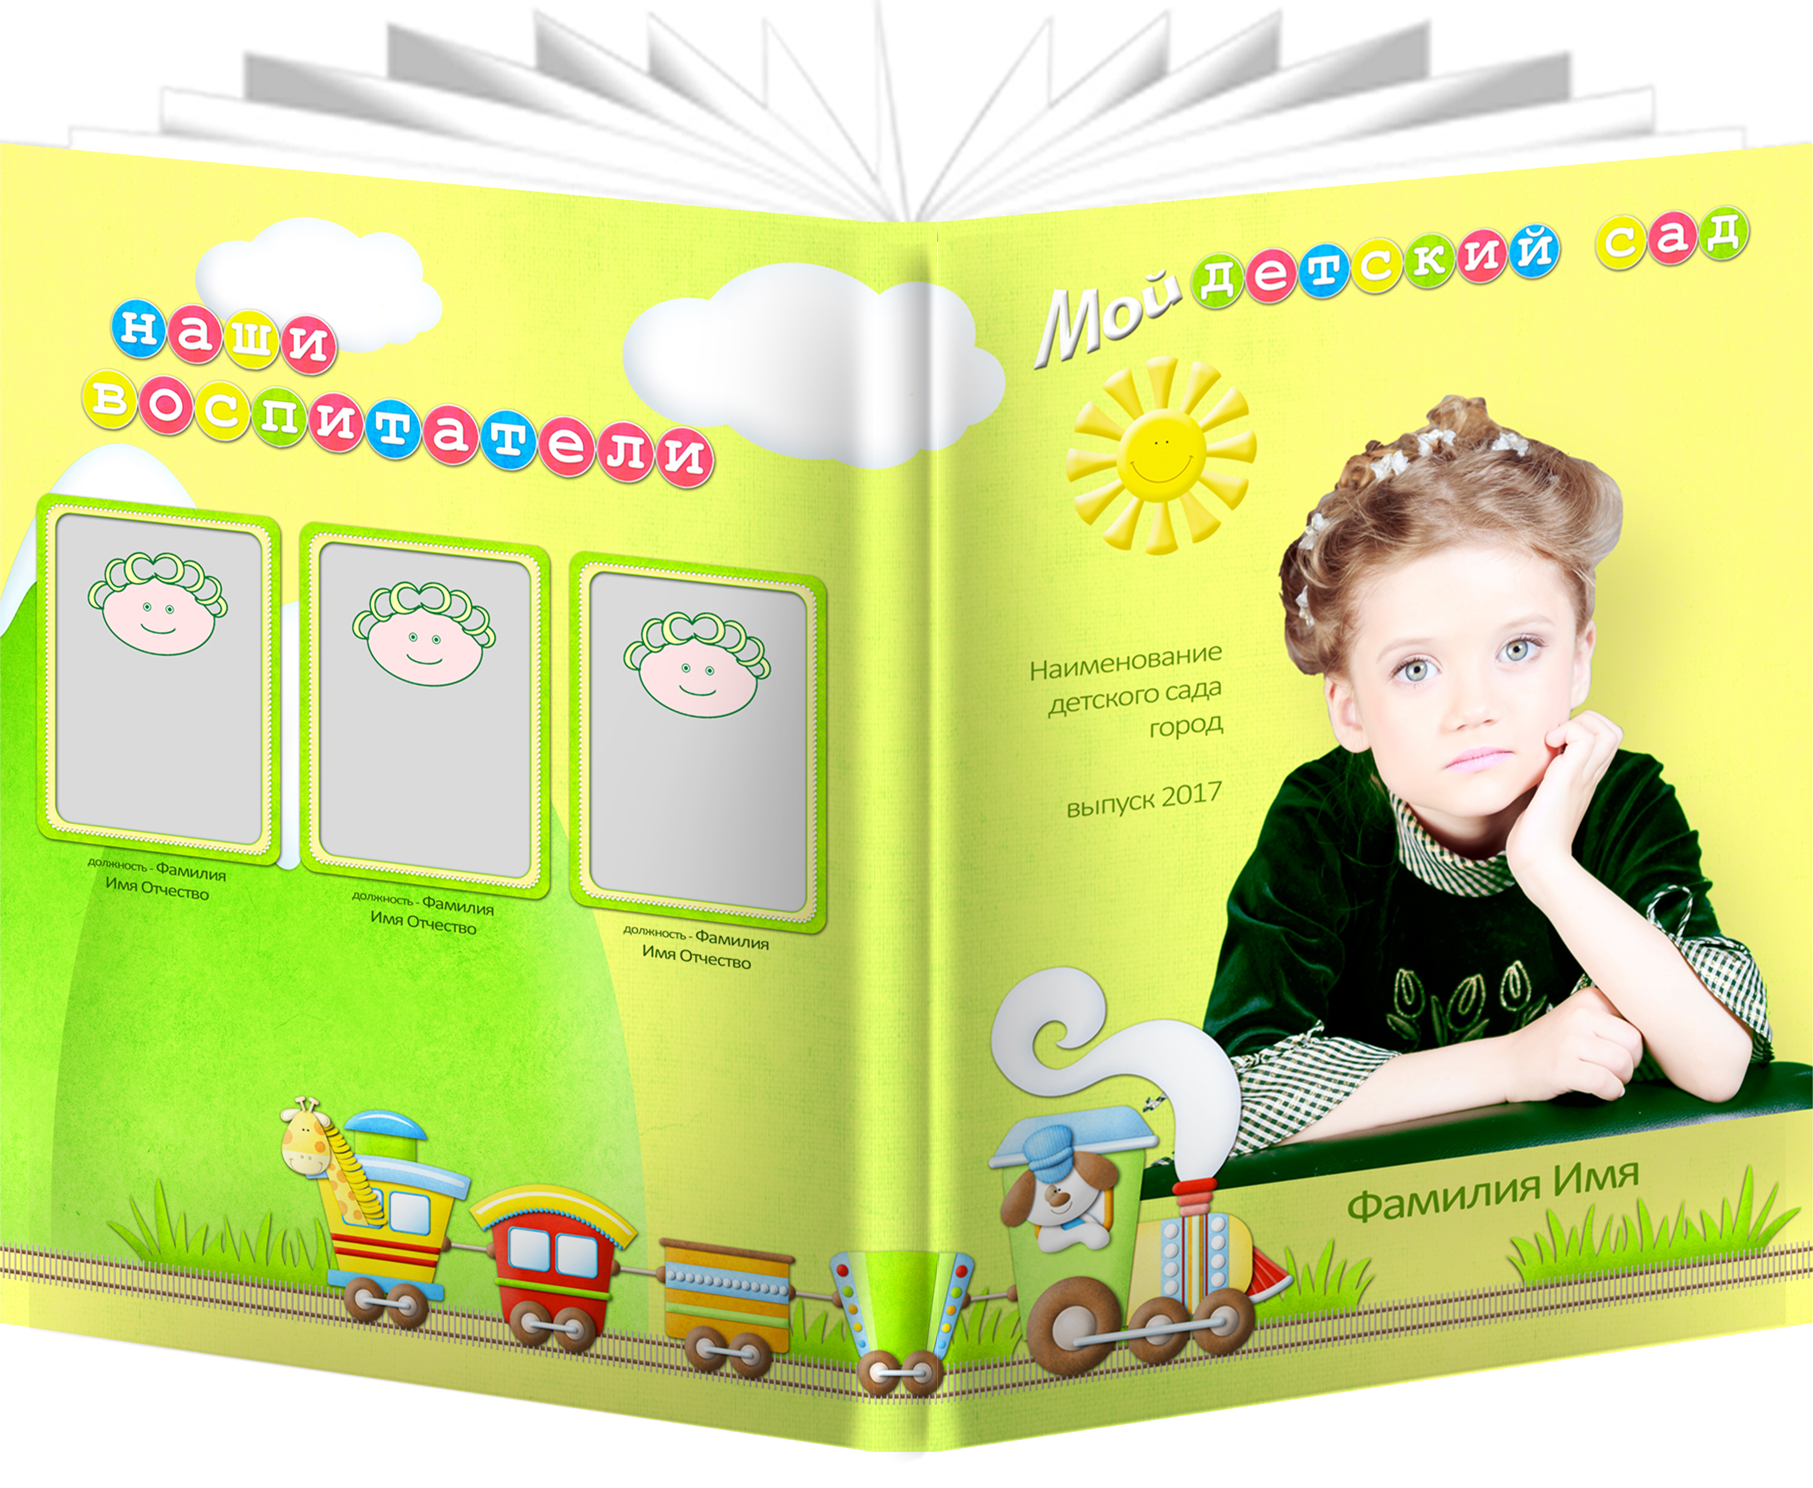  Комплект шаблонов выпускного альбома для детского сада